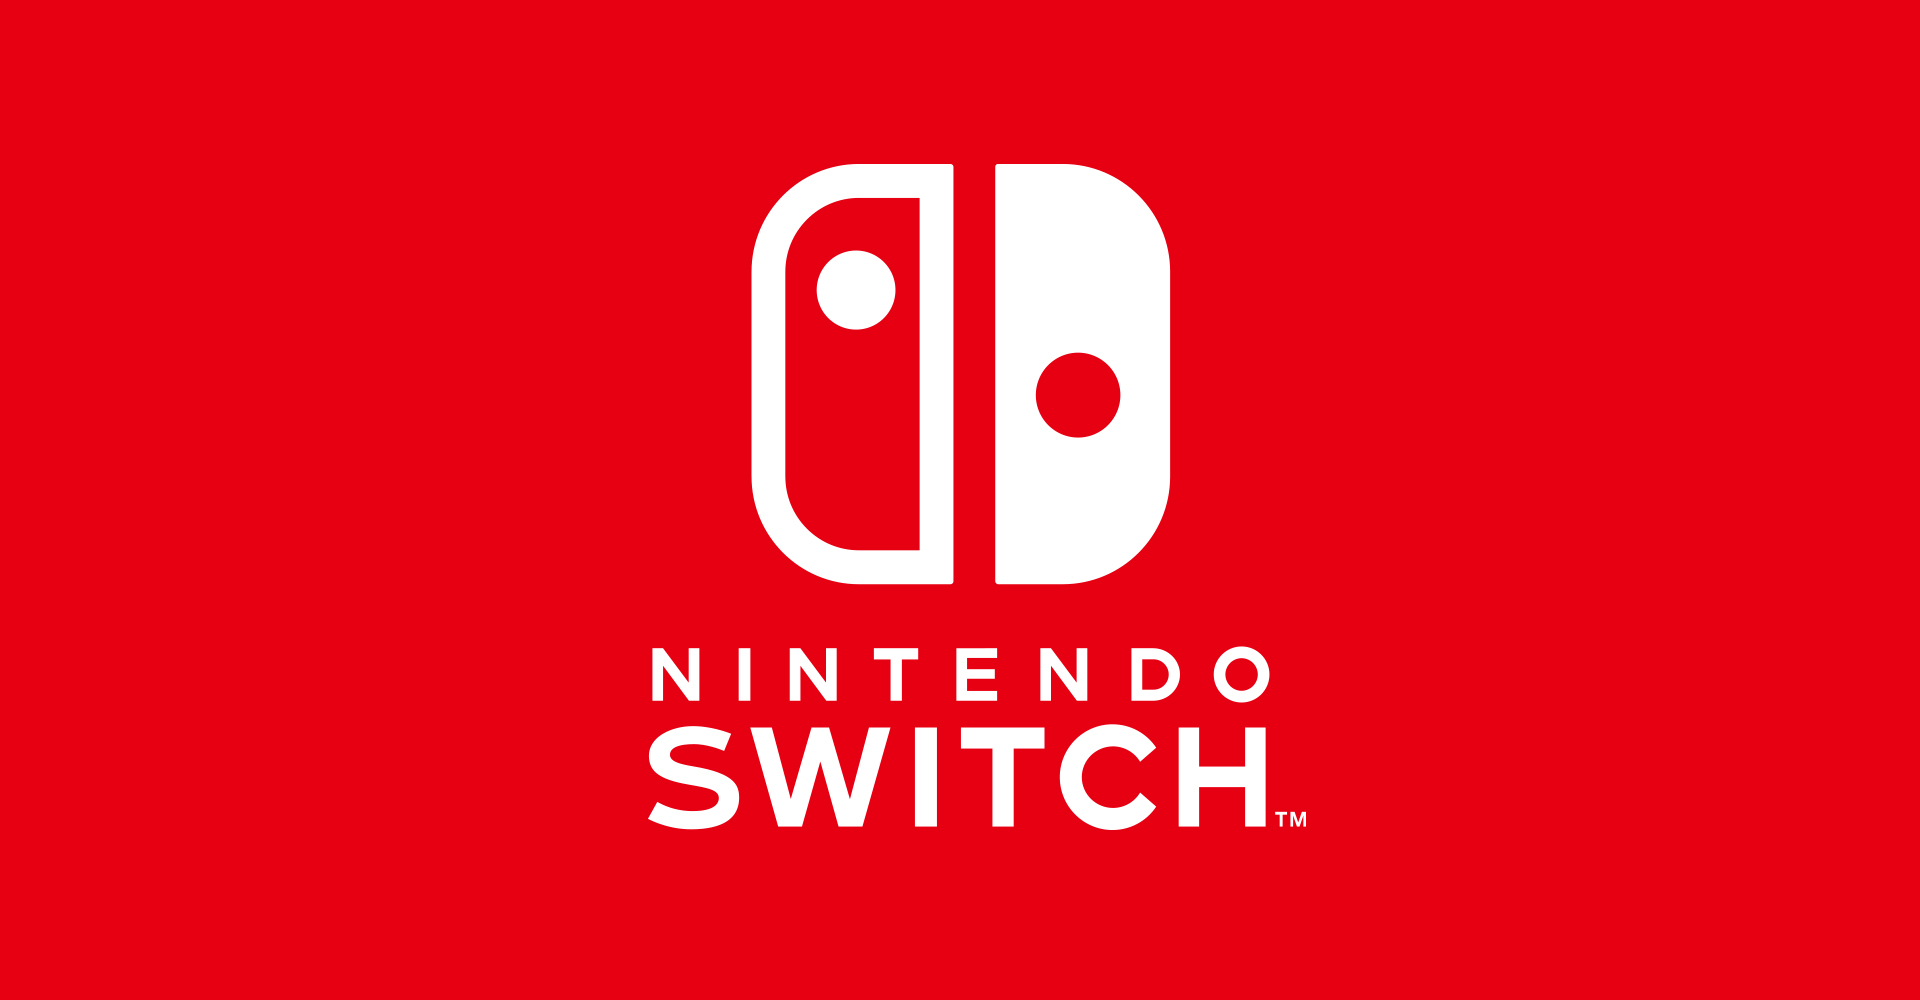 Nintendo планирует уменьшить коробку Switch для увеличения поставок